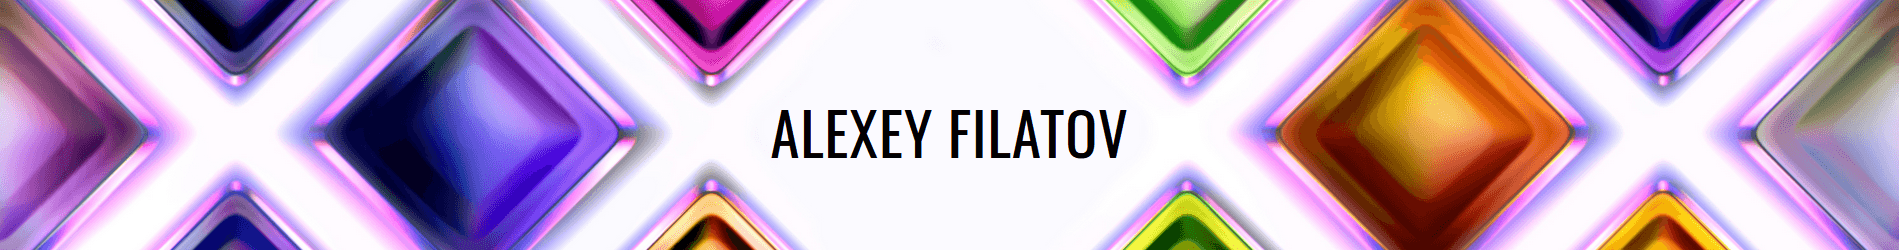 ALEXEY_FILATOV banner